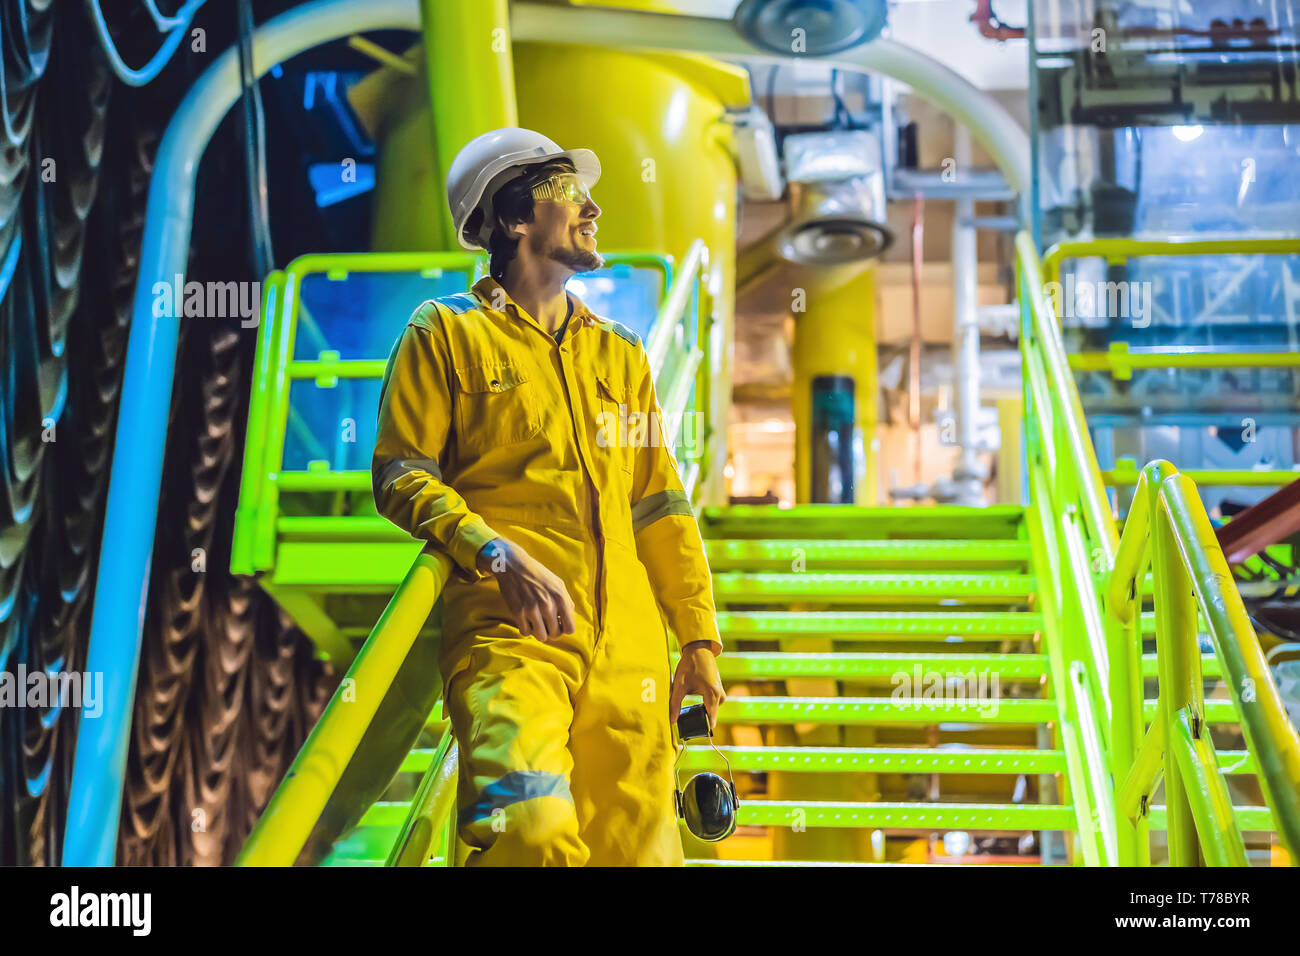 Jeune homme dans un uniforme de travail jaune, les lunettes et le casque dans un environnement industriel, plate-forme d'huile ou de gaz liquéfié plant Banque D'Images